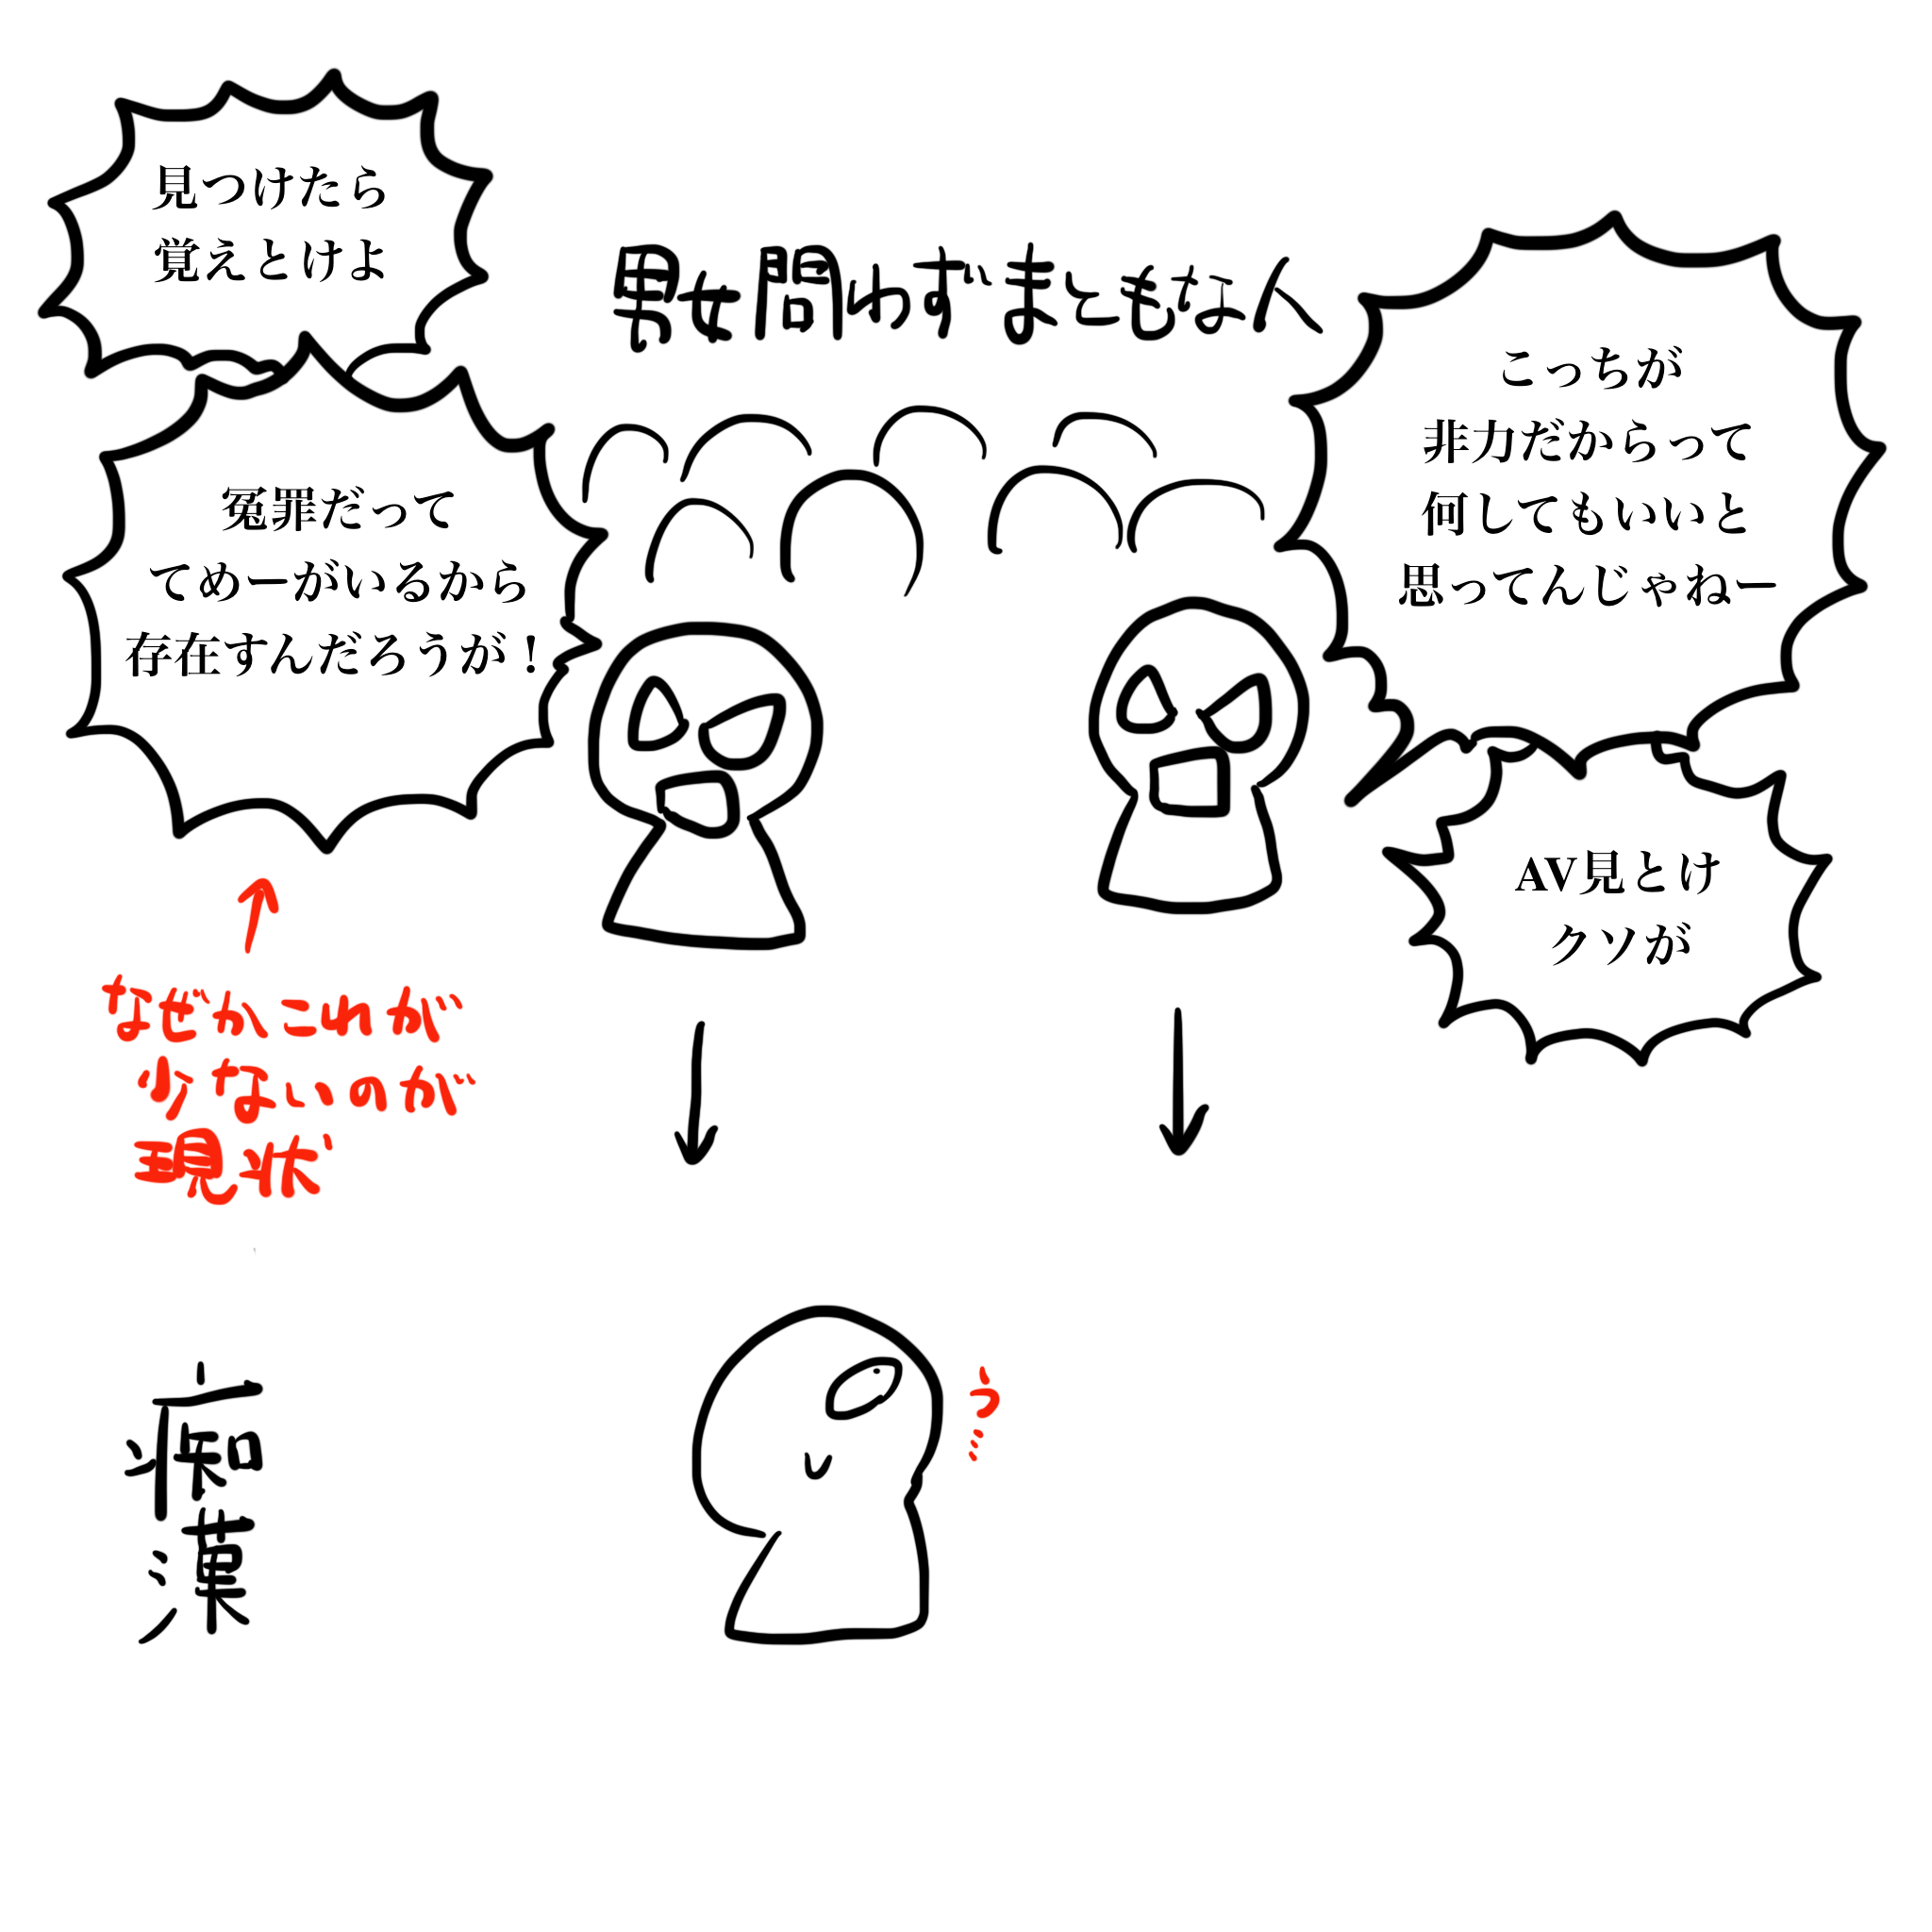 痴漢問題は 女性vs男性 ではなく まともな人間vs犯罪者 Hashimoto Naokiブログ